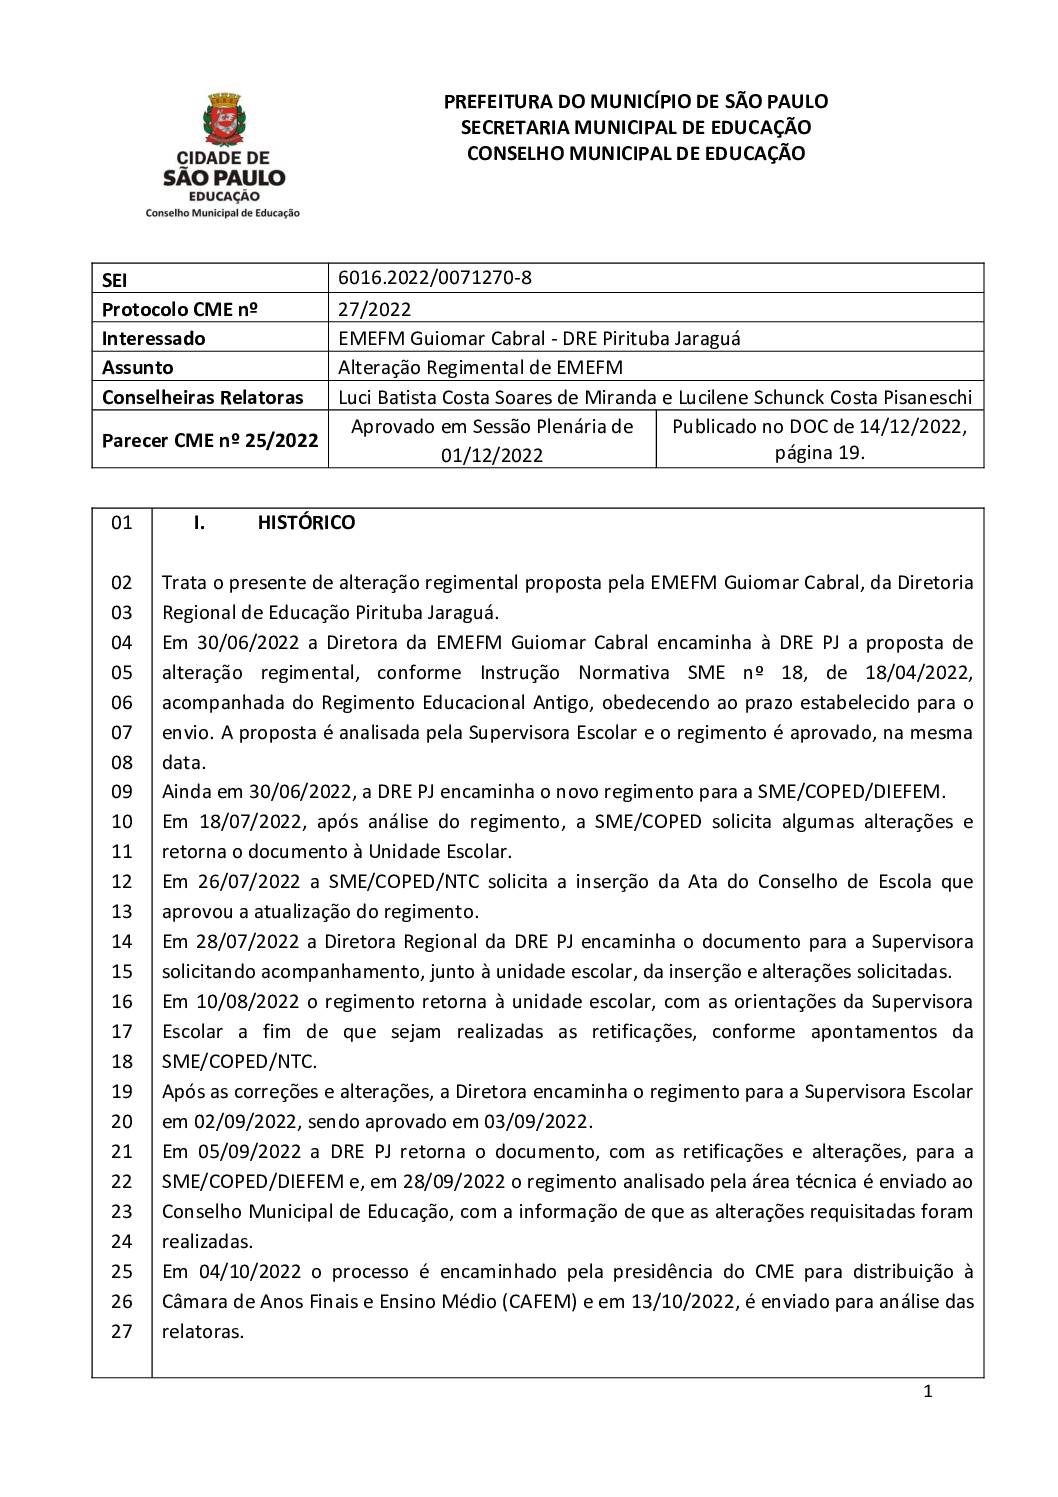 Parecer CME nº 25/2022 - EMEFM Guiomar Cabral (DRE PJ) - Alteração Regimental de EMEFM